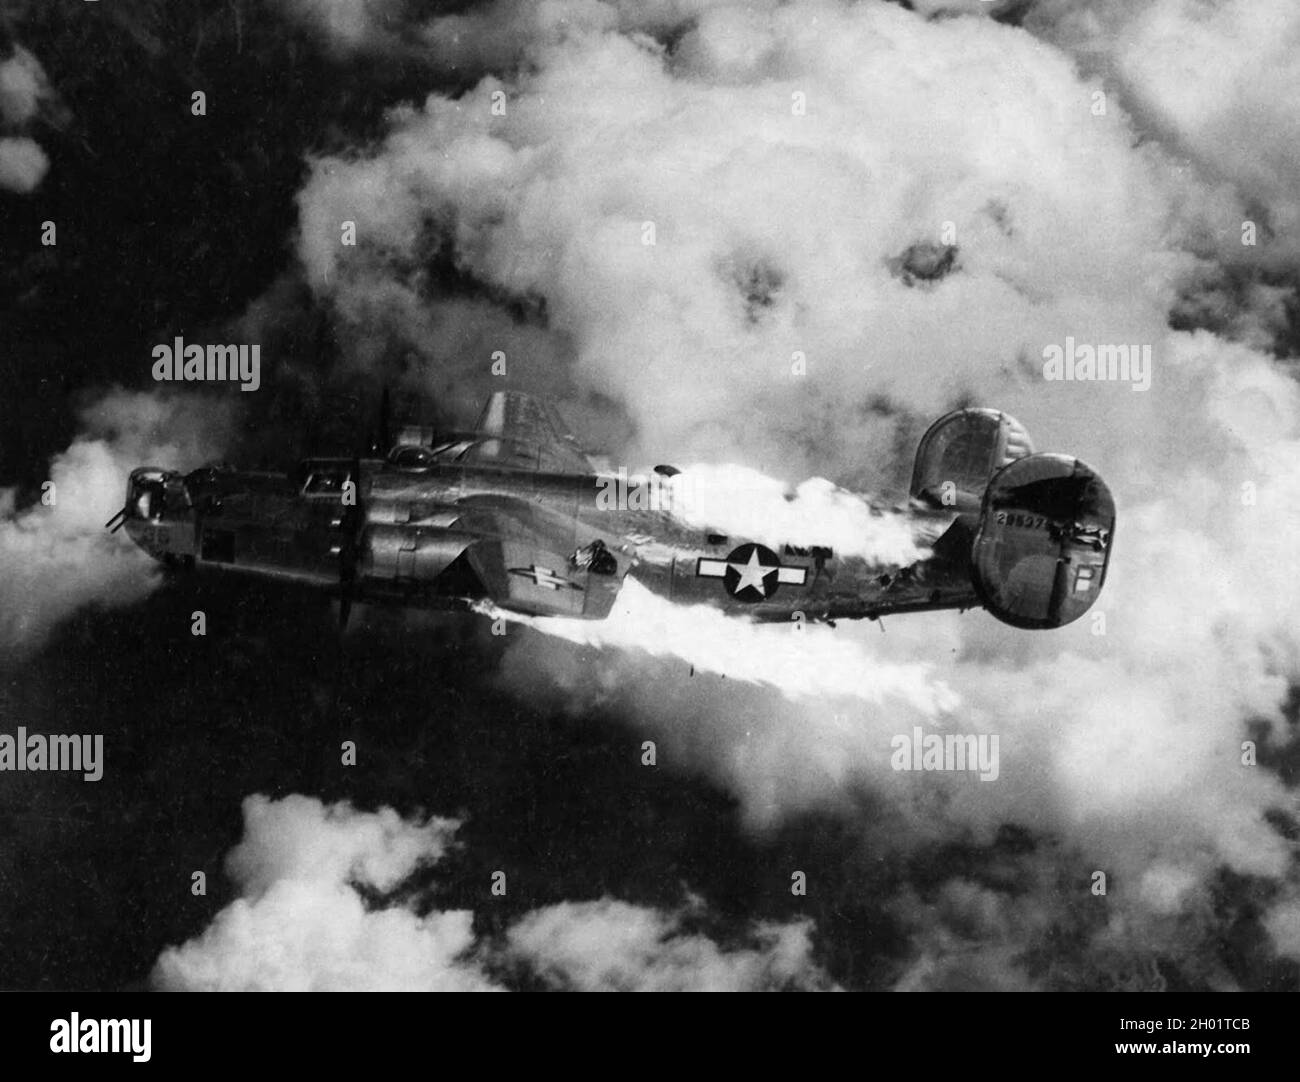 Ein konsolidierter B-24 Liberator-Bomber brennt, nachdem er während eines Angriffs von Flak getroffen wurde. Stockfoto